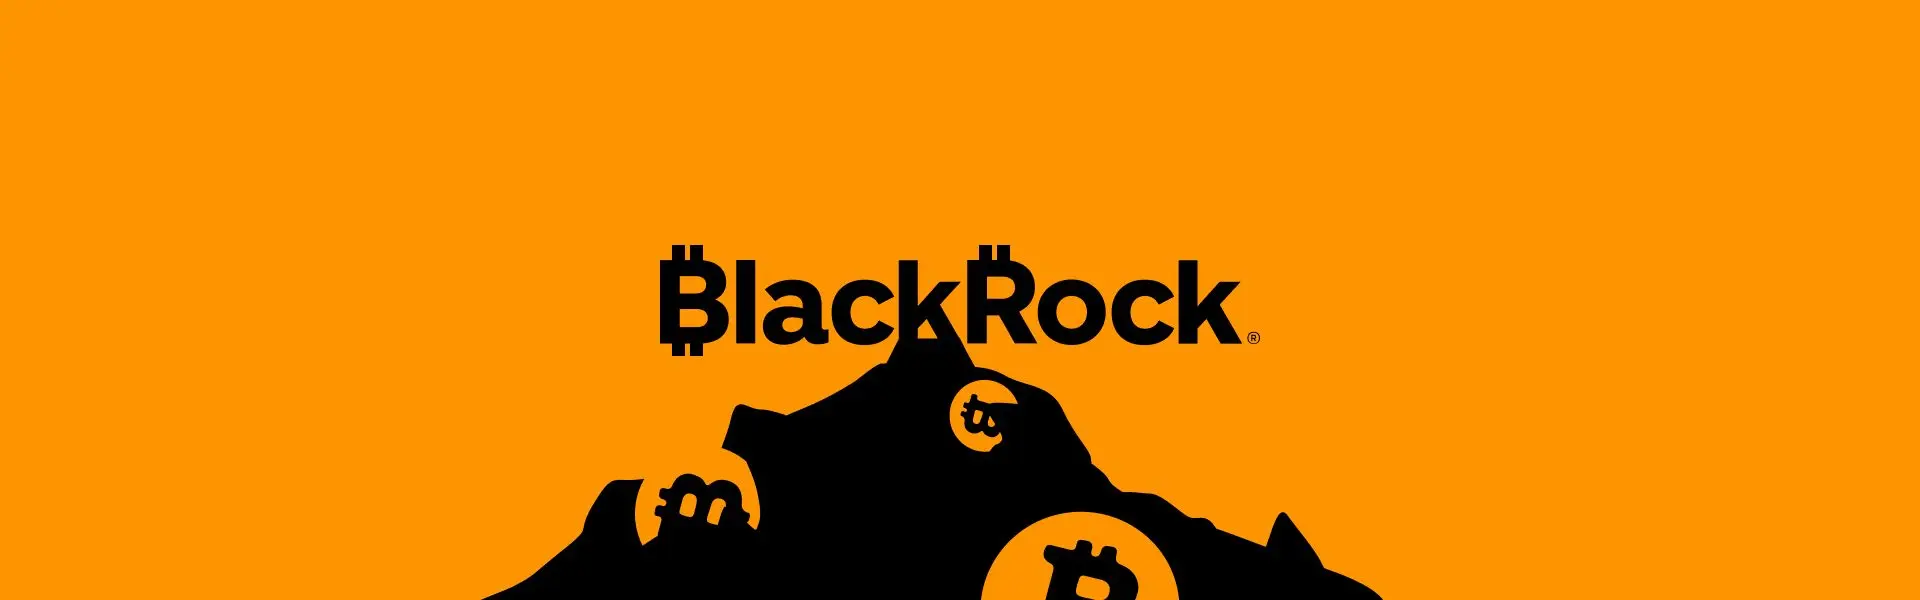 Криптовалюта Біткоїн продовжує залишатися в основі інтересів інвесторів компанії BlackRock.